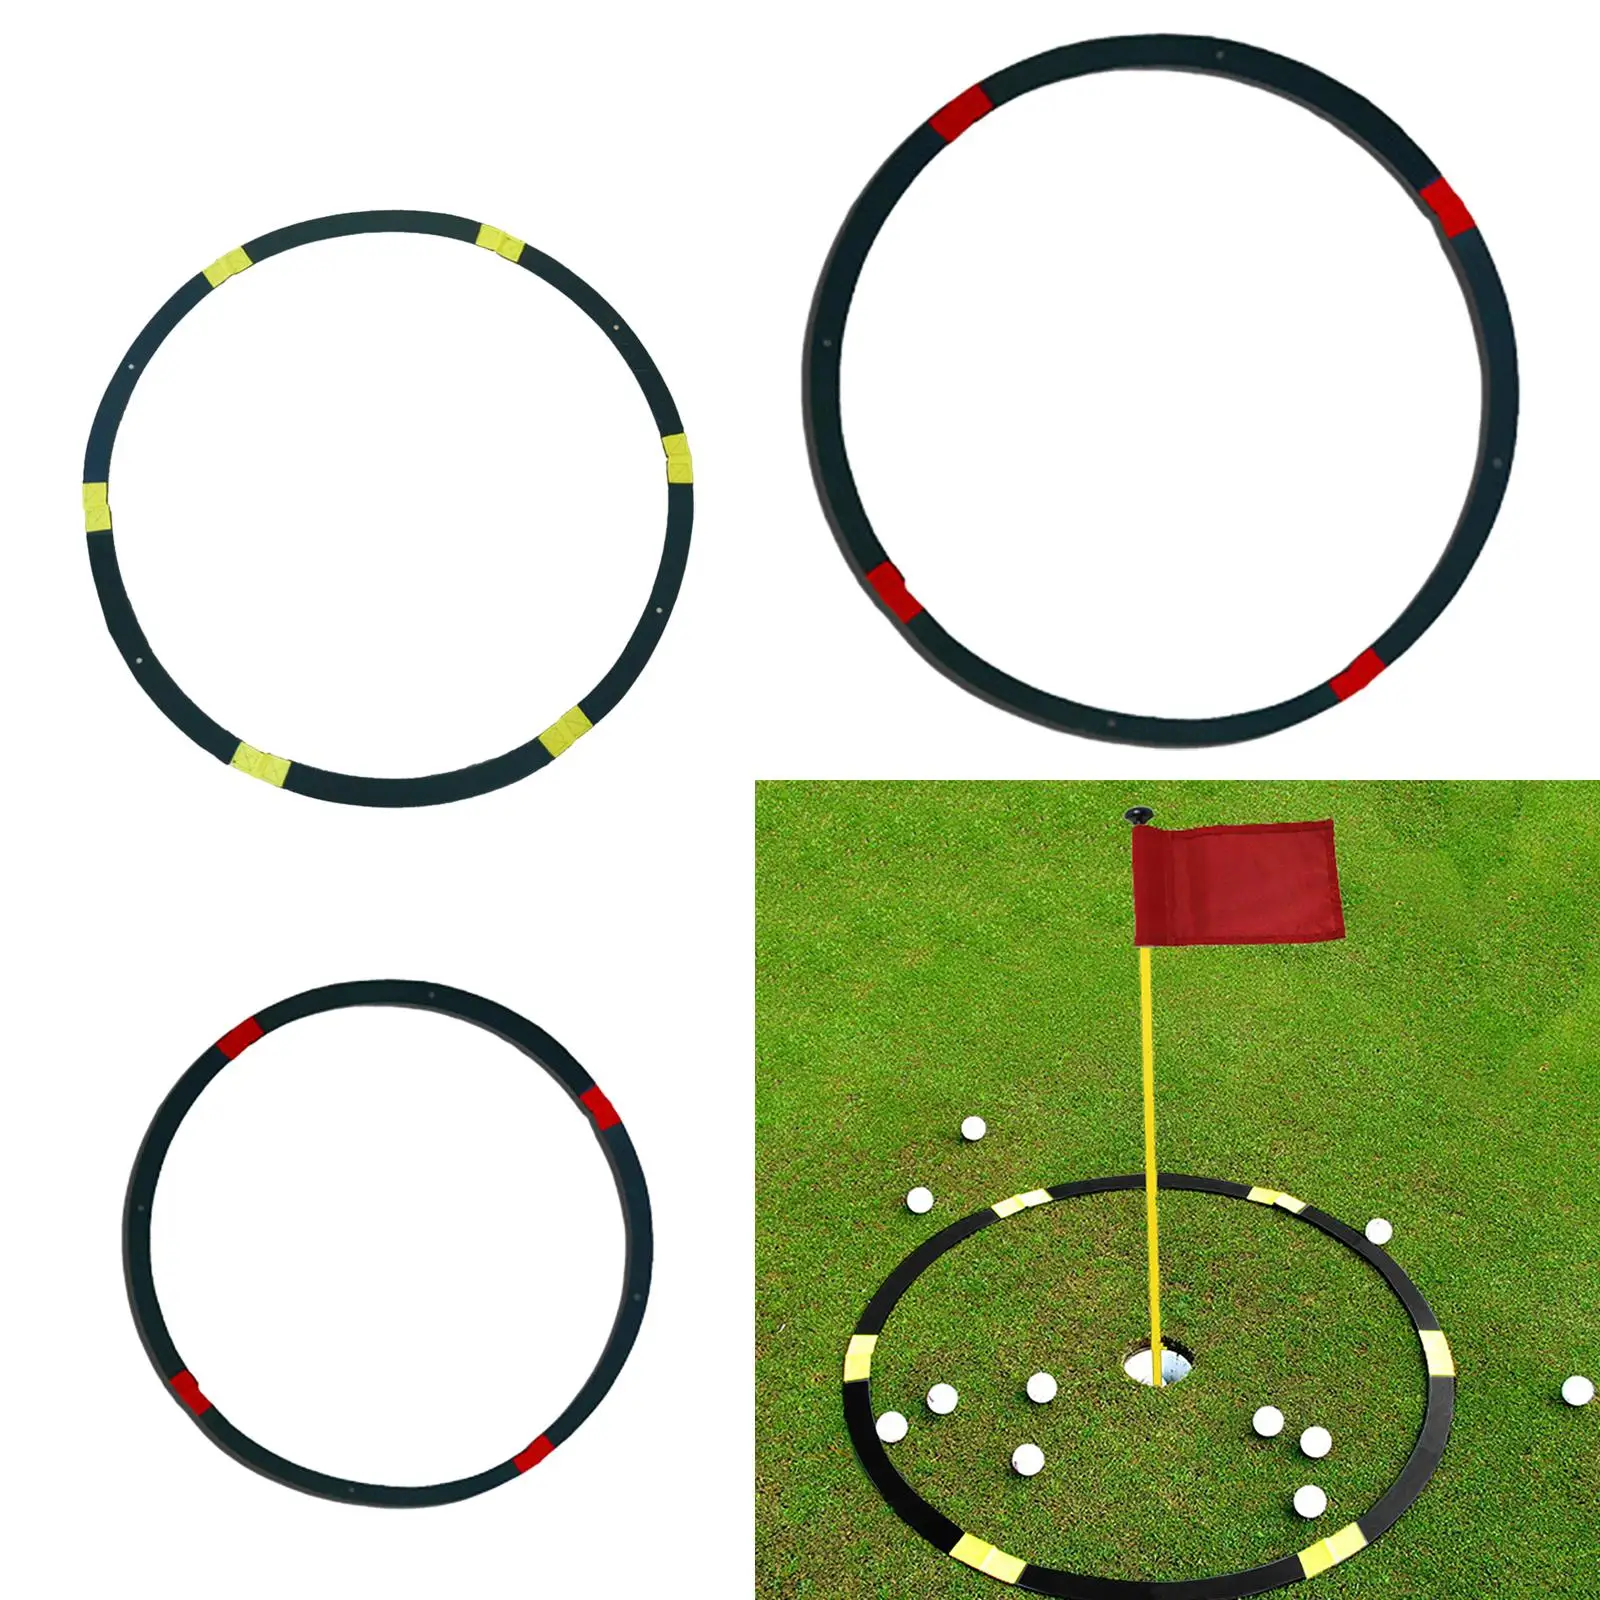 Golf Green Target Circle Putting Pitching Target Indicator Circle Training Aid